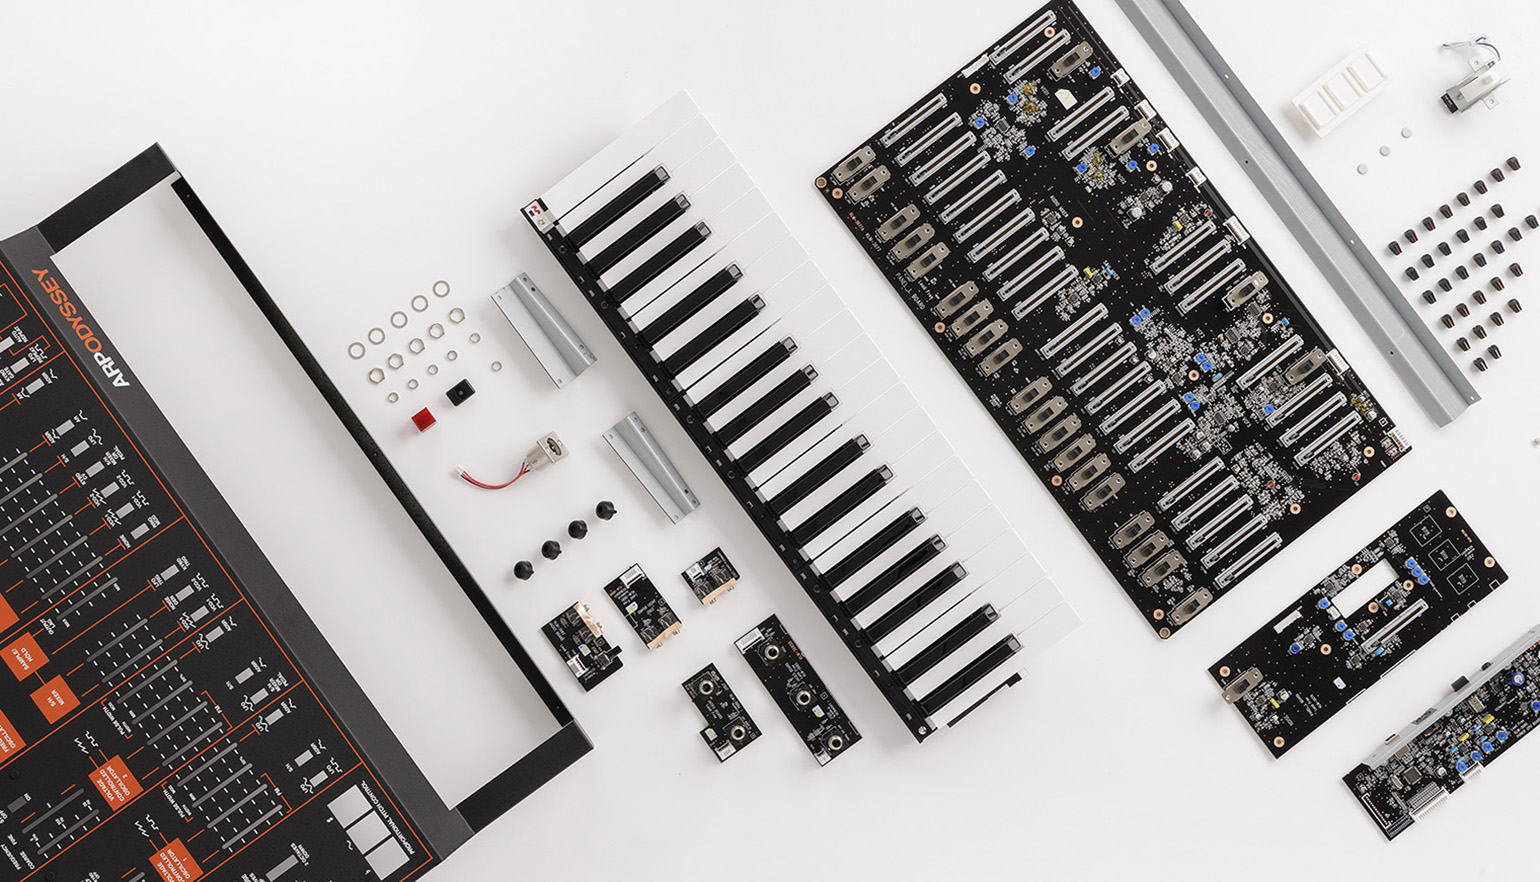 Pieza por pieza, ARP Odyssey FS Kit incluye todo lo necesario para construir el clásico sintetizador monofónico en casa, sin necesidad de poseer conocimientos de electrónica o soldadura